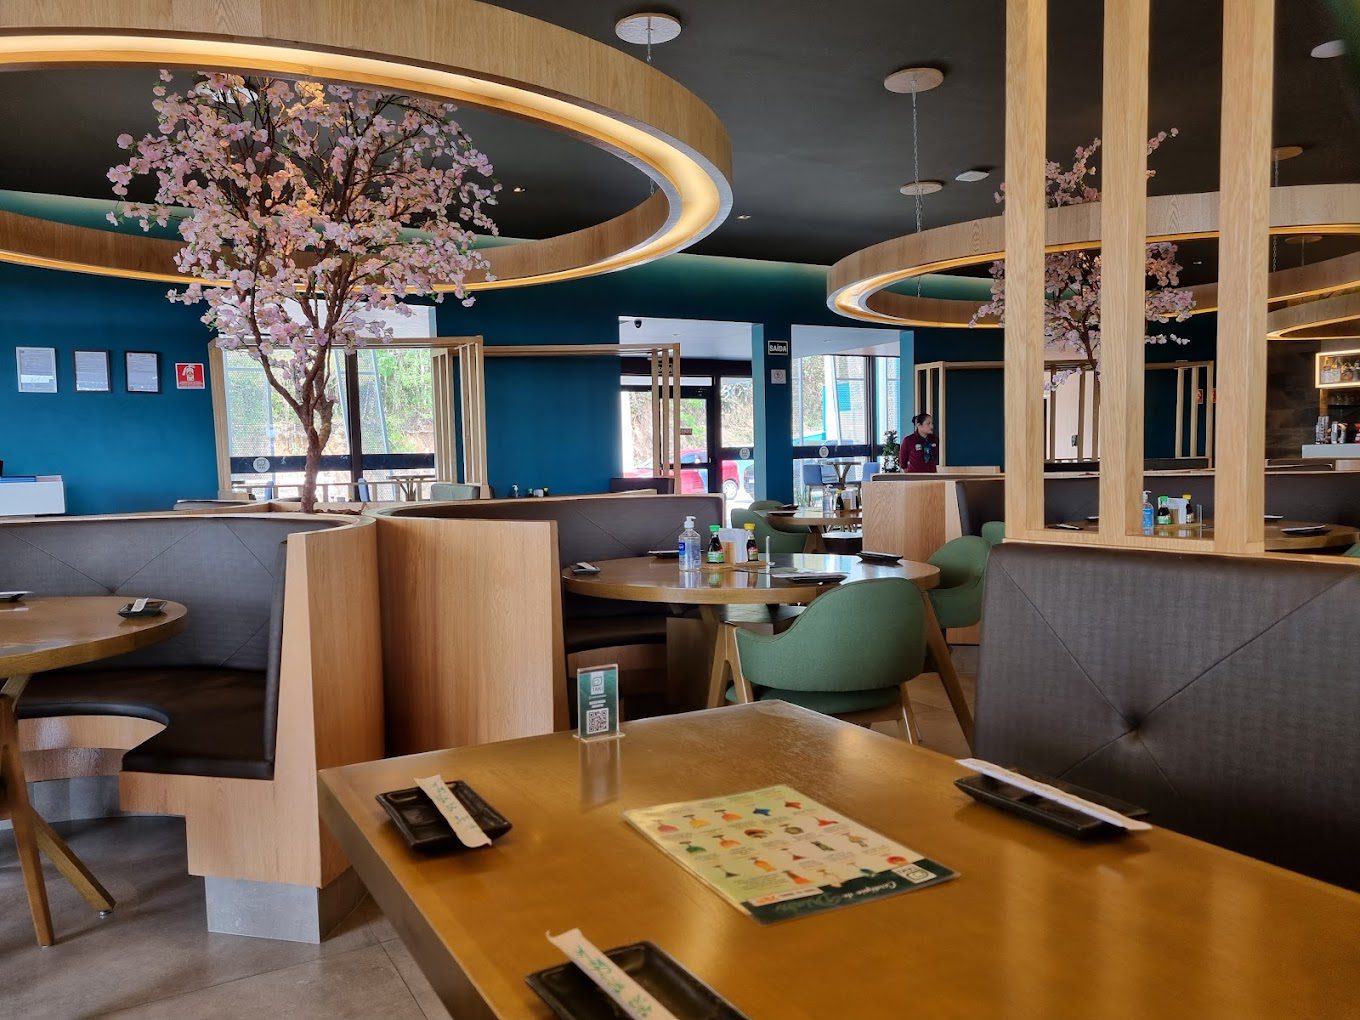 Foto do restaurante Taki Sushi mostrando o salão principal